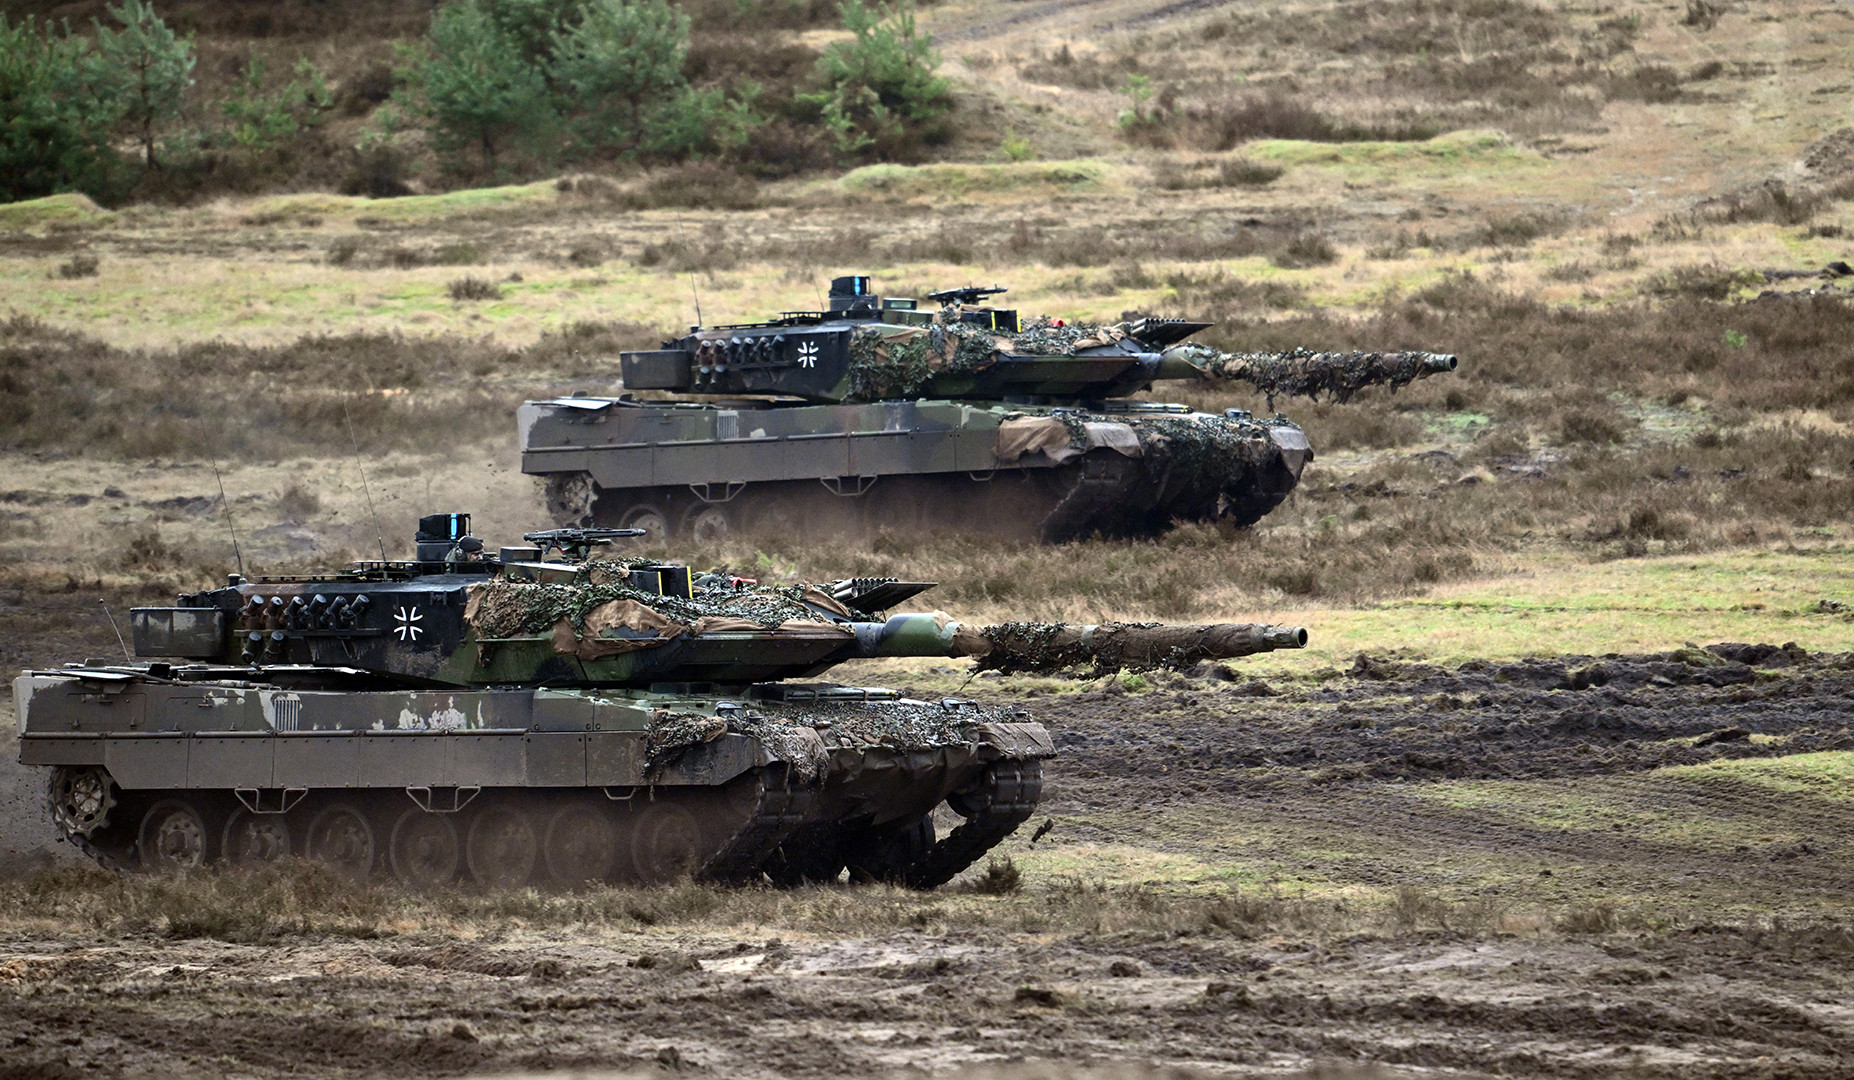 Բեռլինի խոստացած Leopard-2 մարտական տանկերը փոխանցվել են Կիևին. Շոլց